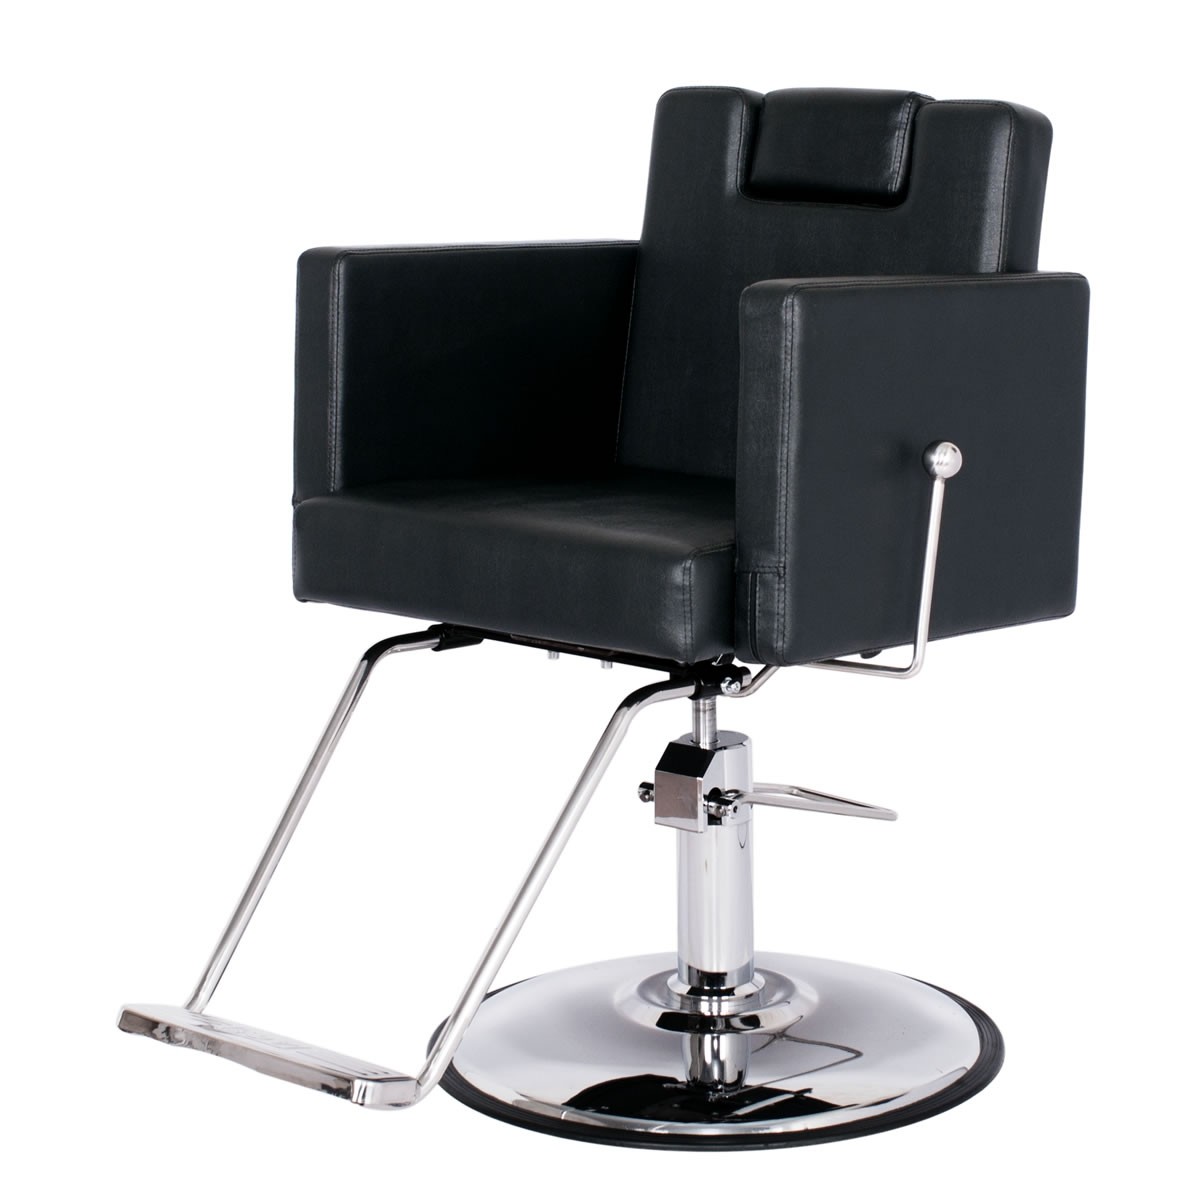 "CANON" Reclining Salon Chair, Reclining Shampoo Chair, All Purpose